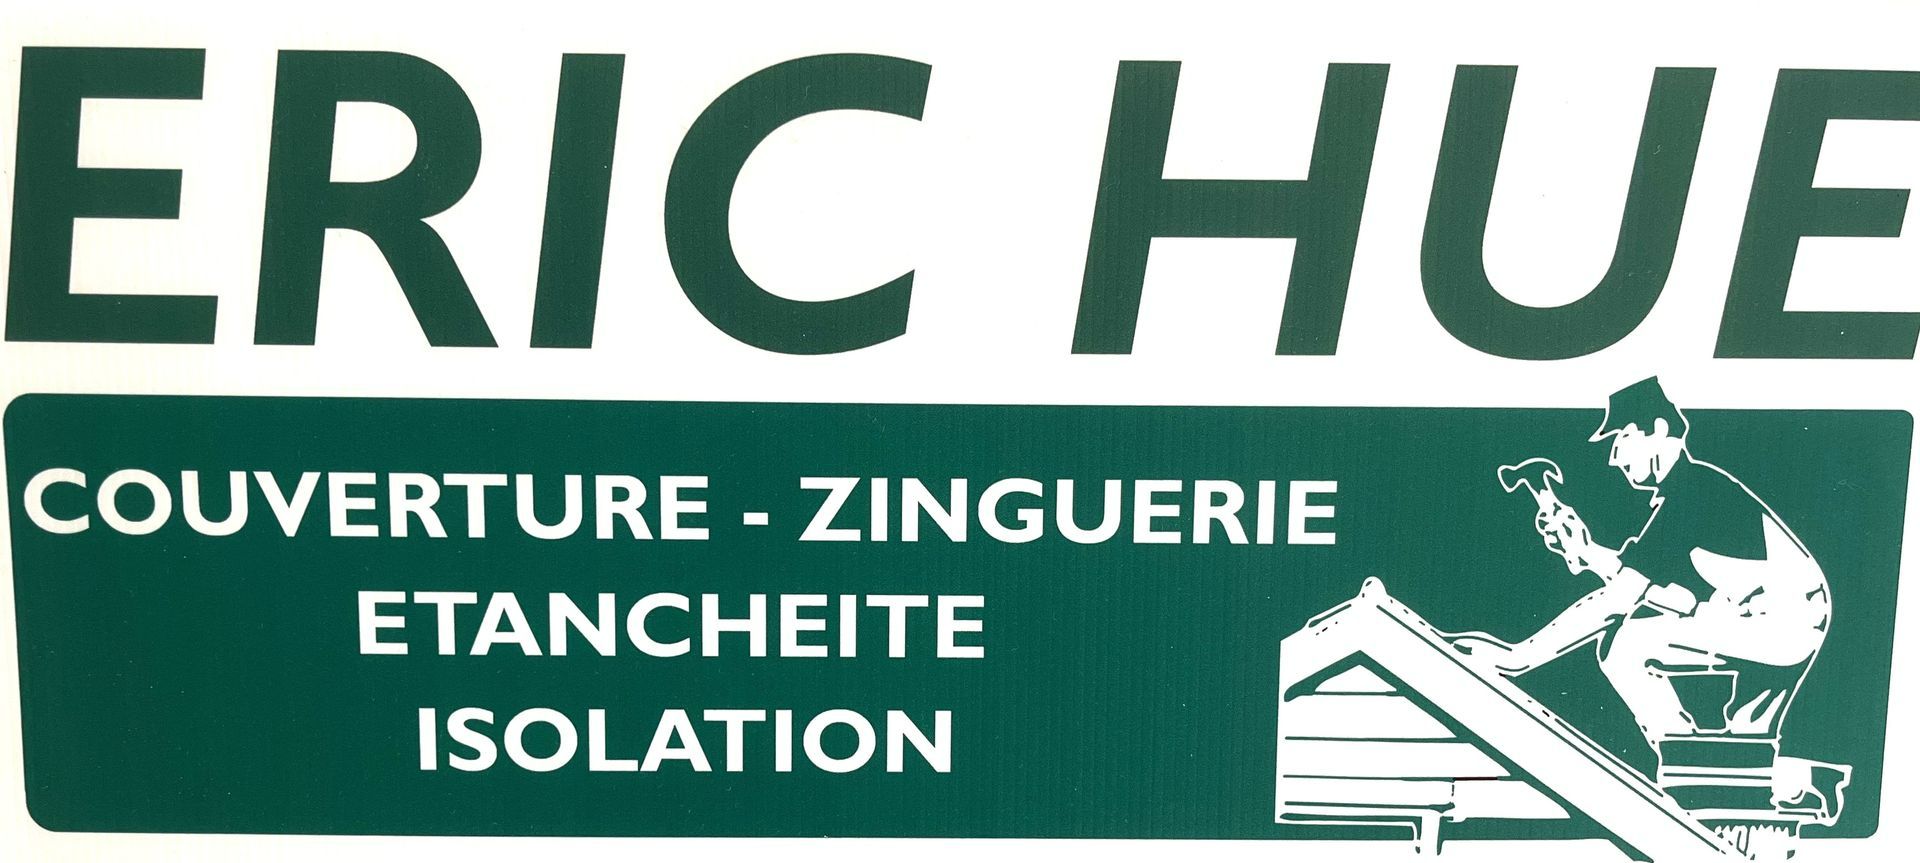 Logo M. Hue Eric